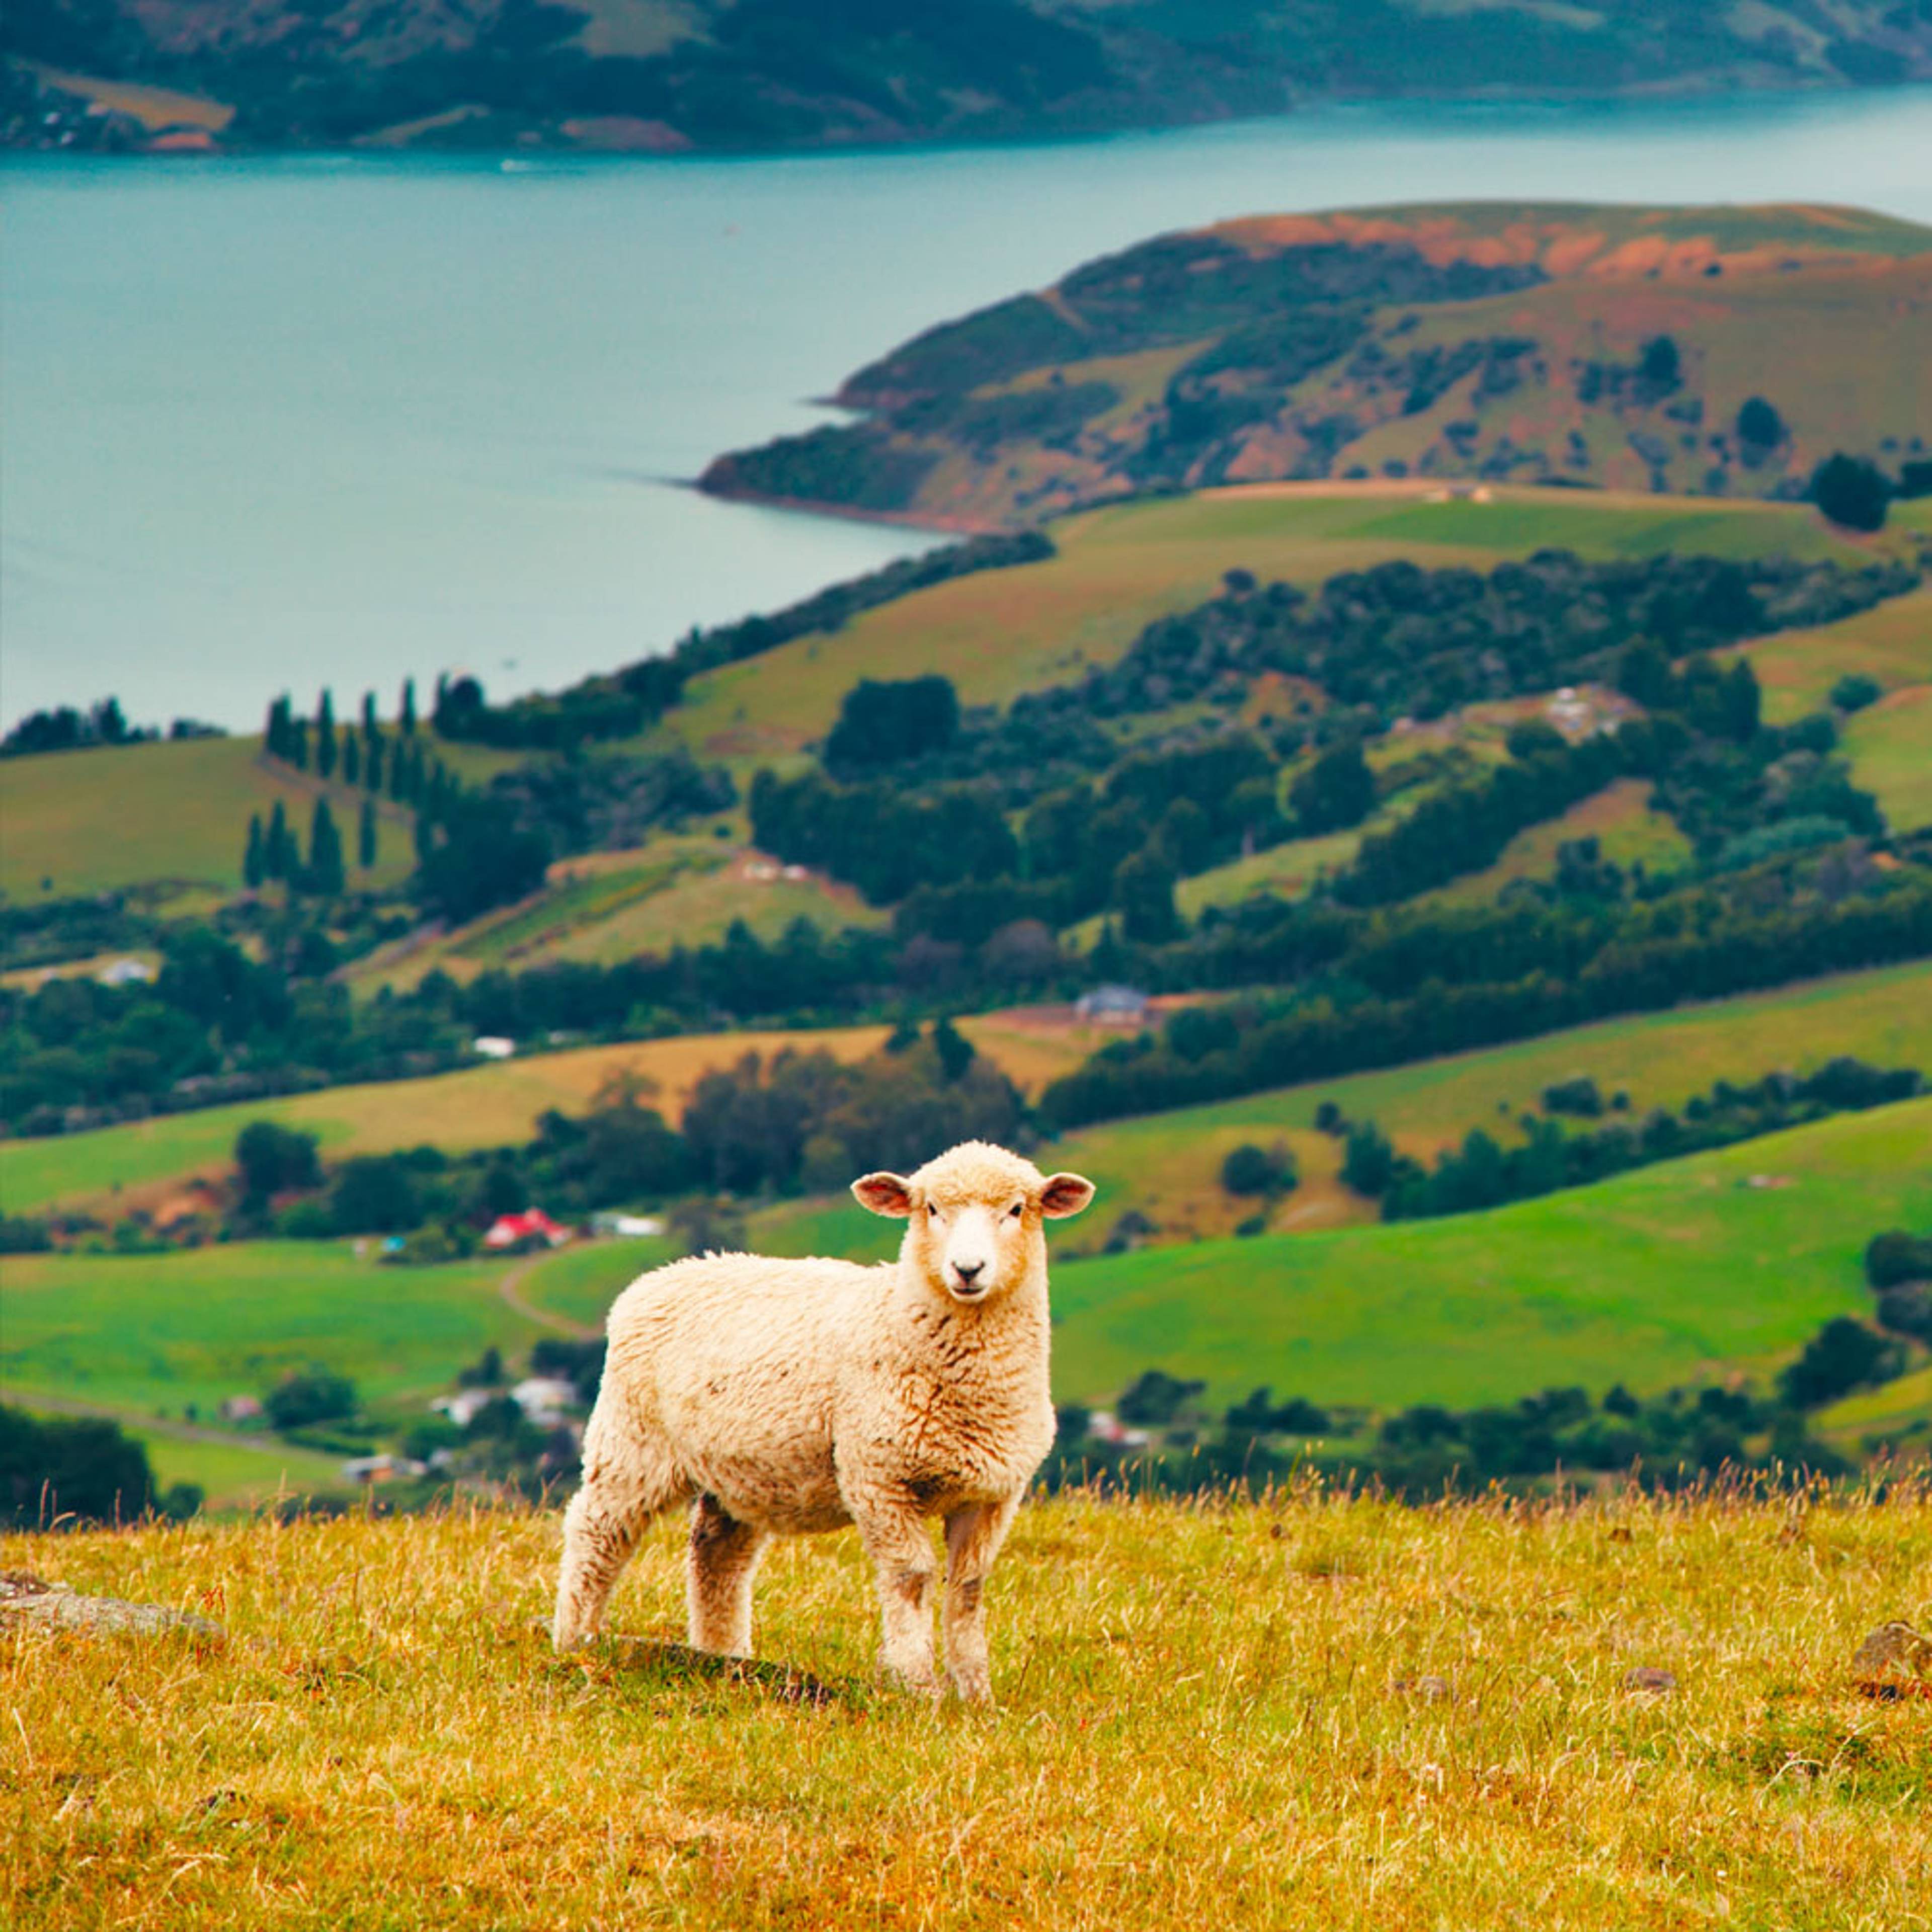 Votre voyage Trois semaines en Nouvelle Zélande 100% sur mesure